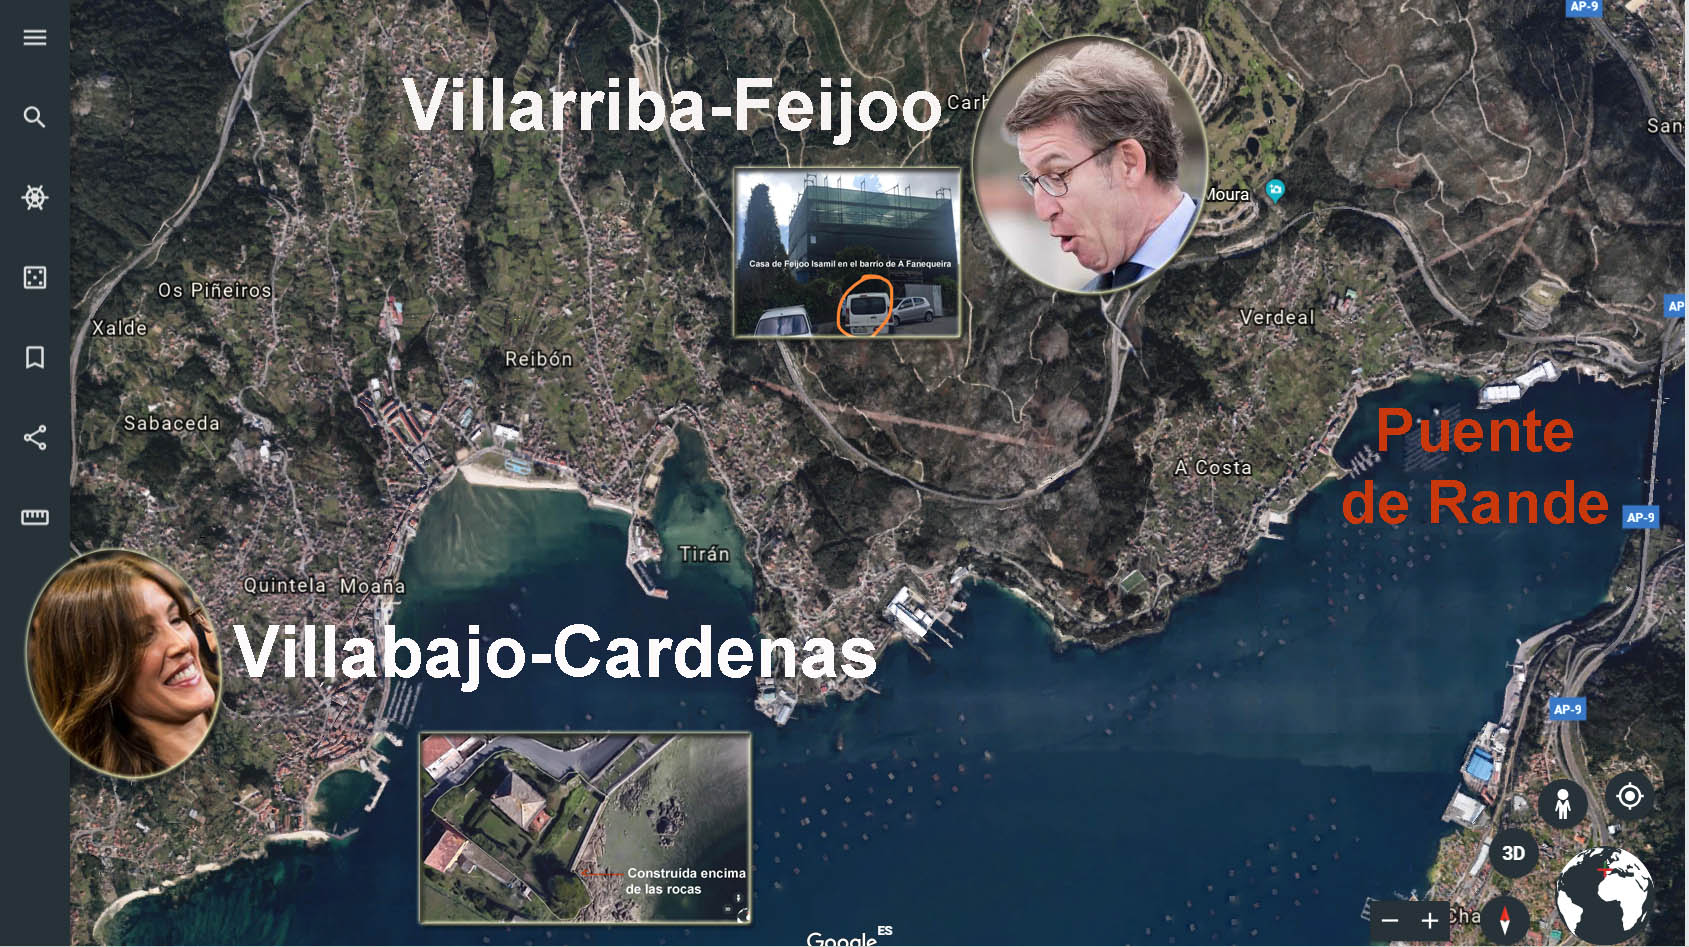 Feijoo-VillaArriba-Cardenas-Villa-Abajo.jpg